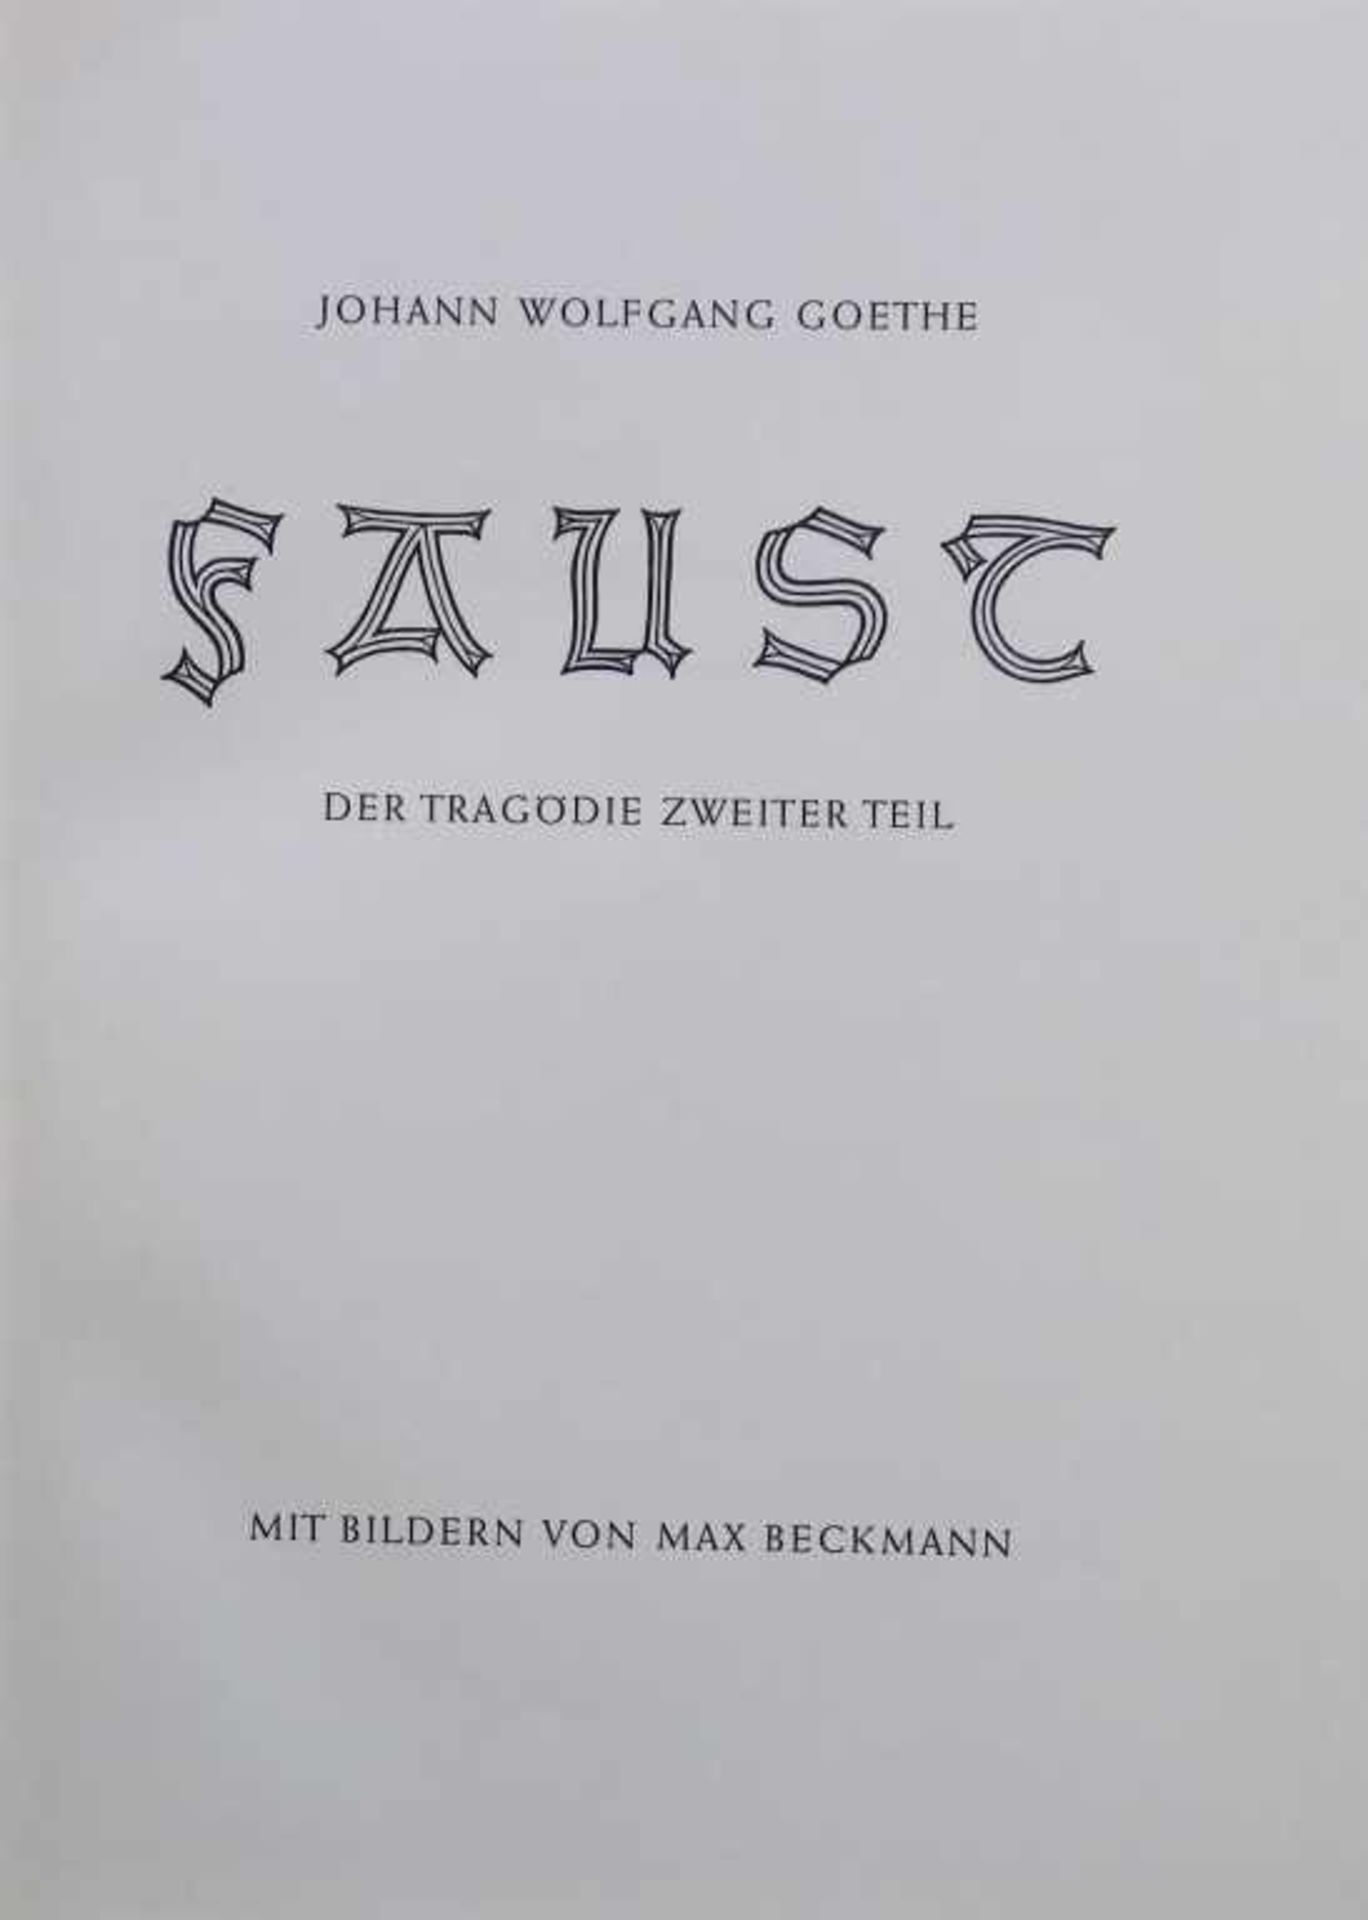 BECKMANN, MAX: "Faust - Der Tragödie zweiter Teil", 1943/44412 Seiten: die Zeichnungen von Max